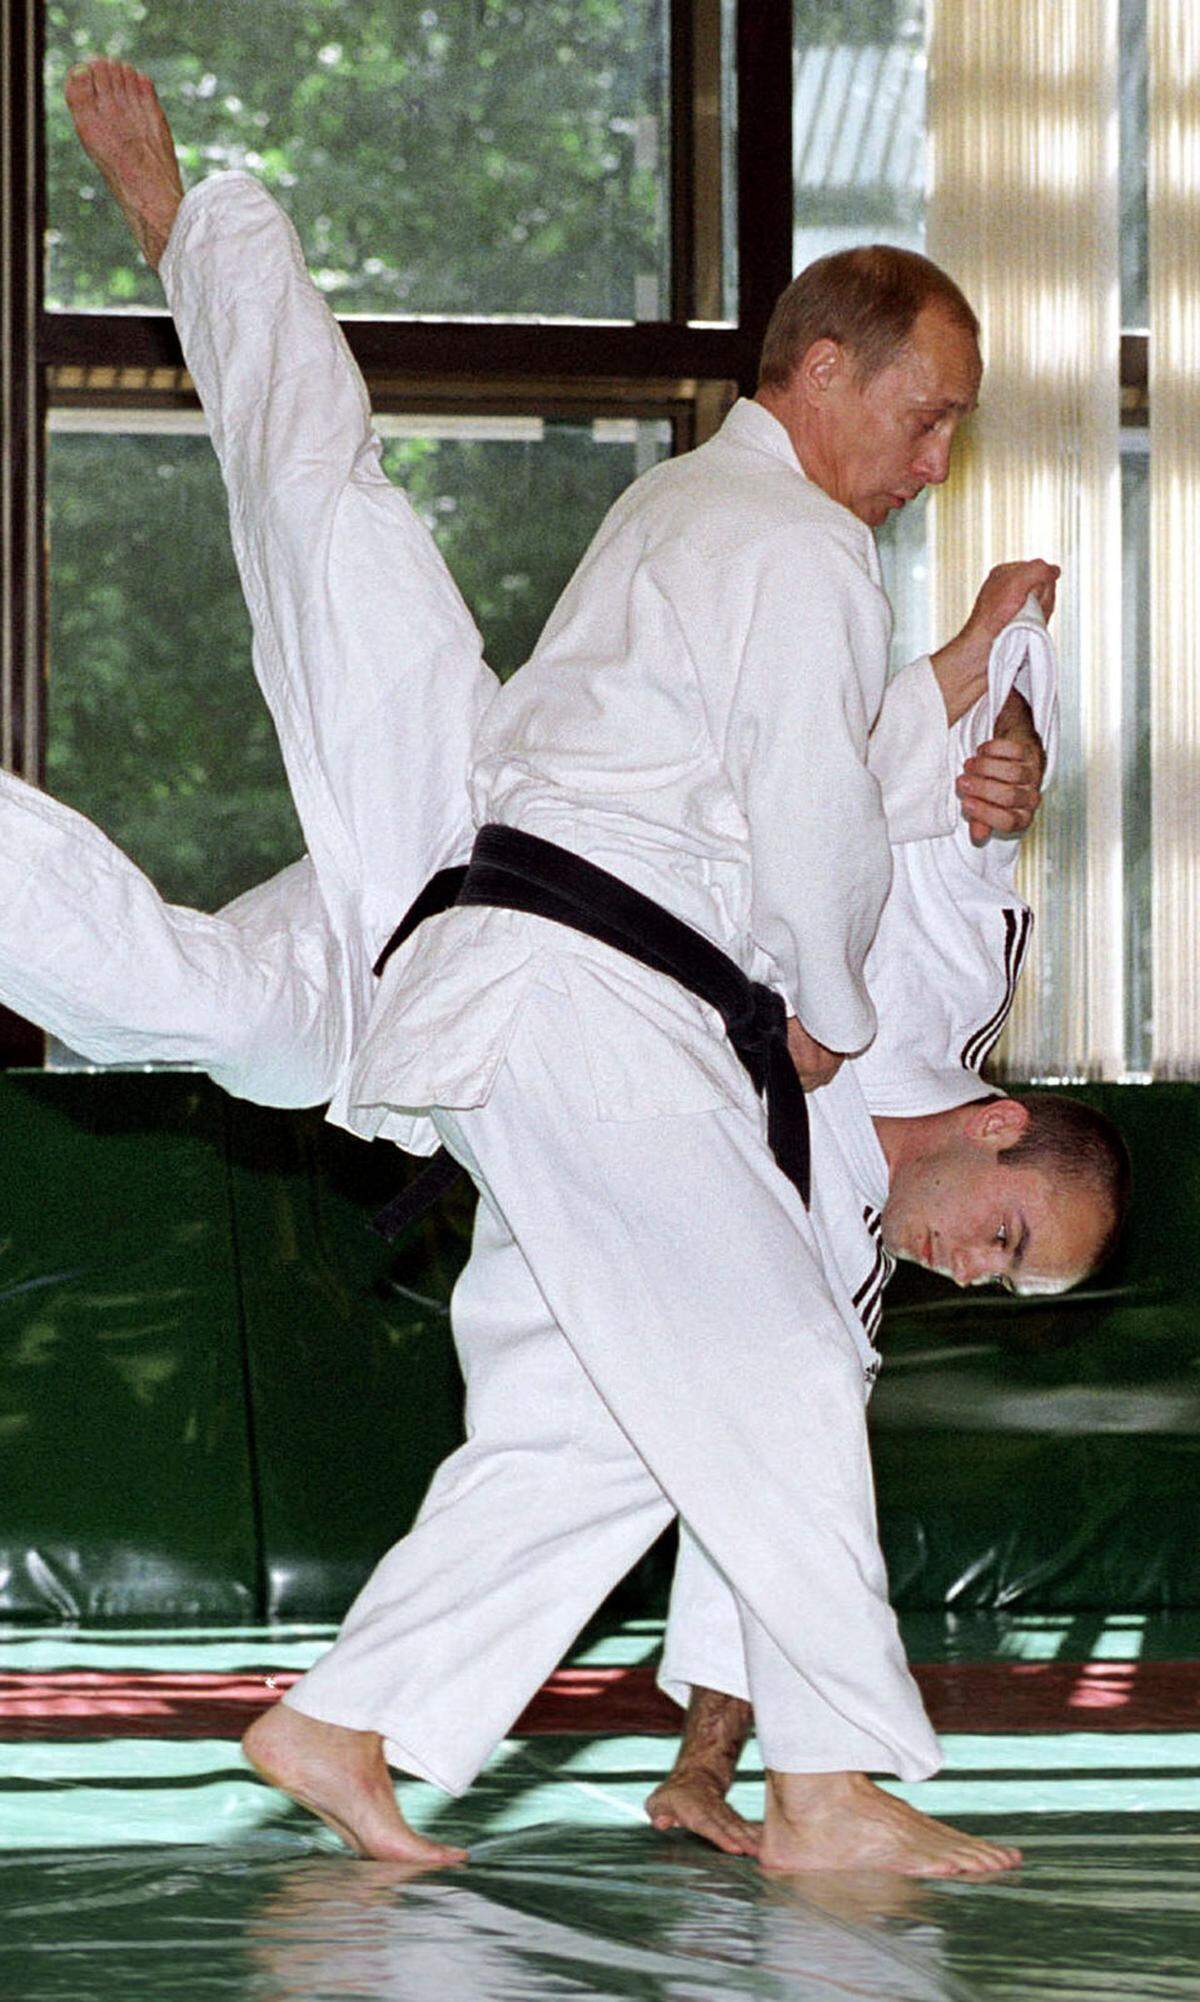 Außerdem inszenierte sich Putin bereits als Judoka, ...